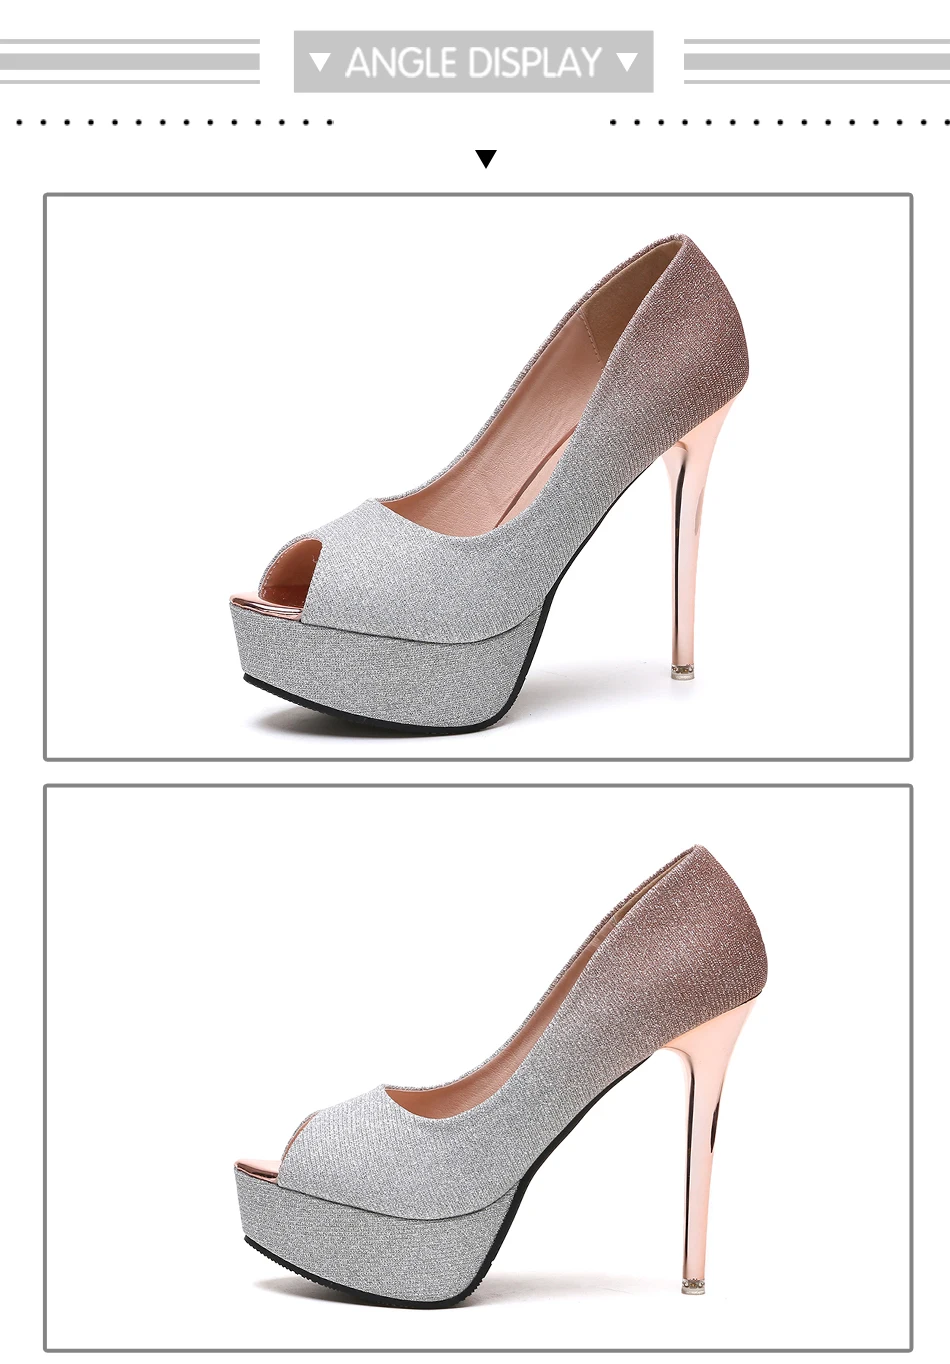 BYQDY/ г.; Осенняя модная обувь; женская обувь на каблуке; весенняя обувь на платформе цвета шампанского; модельная обувь с открытым носком; Серебряная Пряжка; женские туфли-лодочки на шпильке